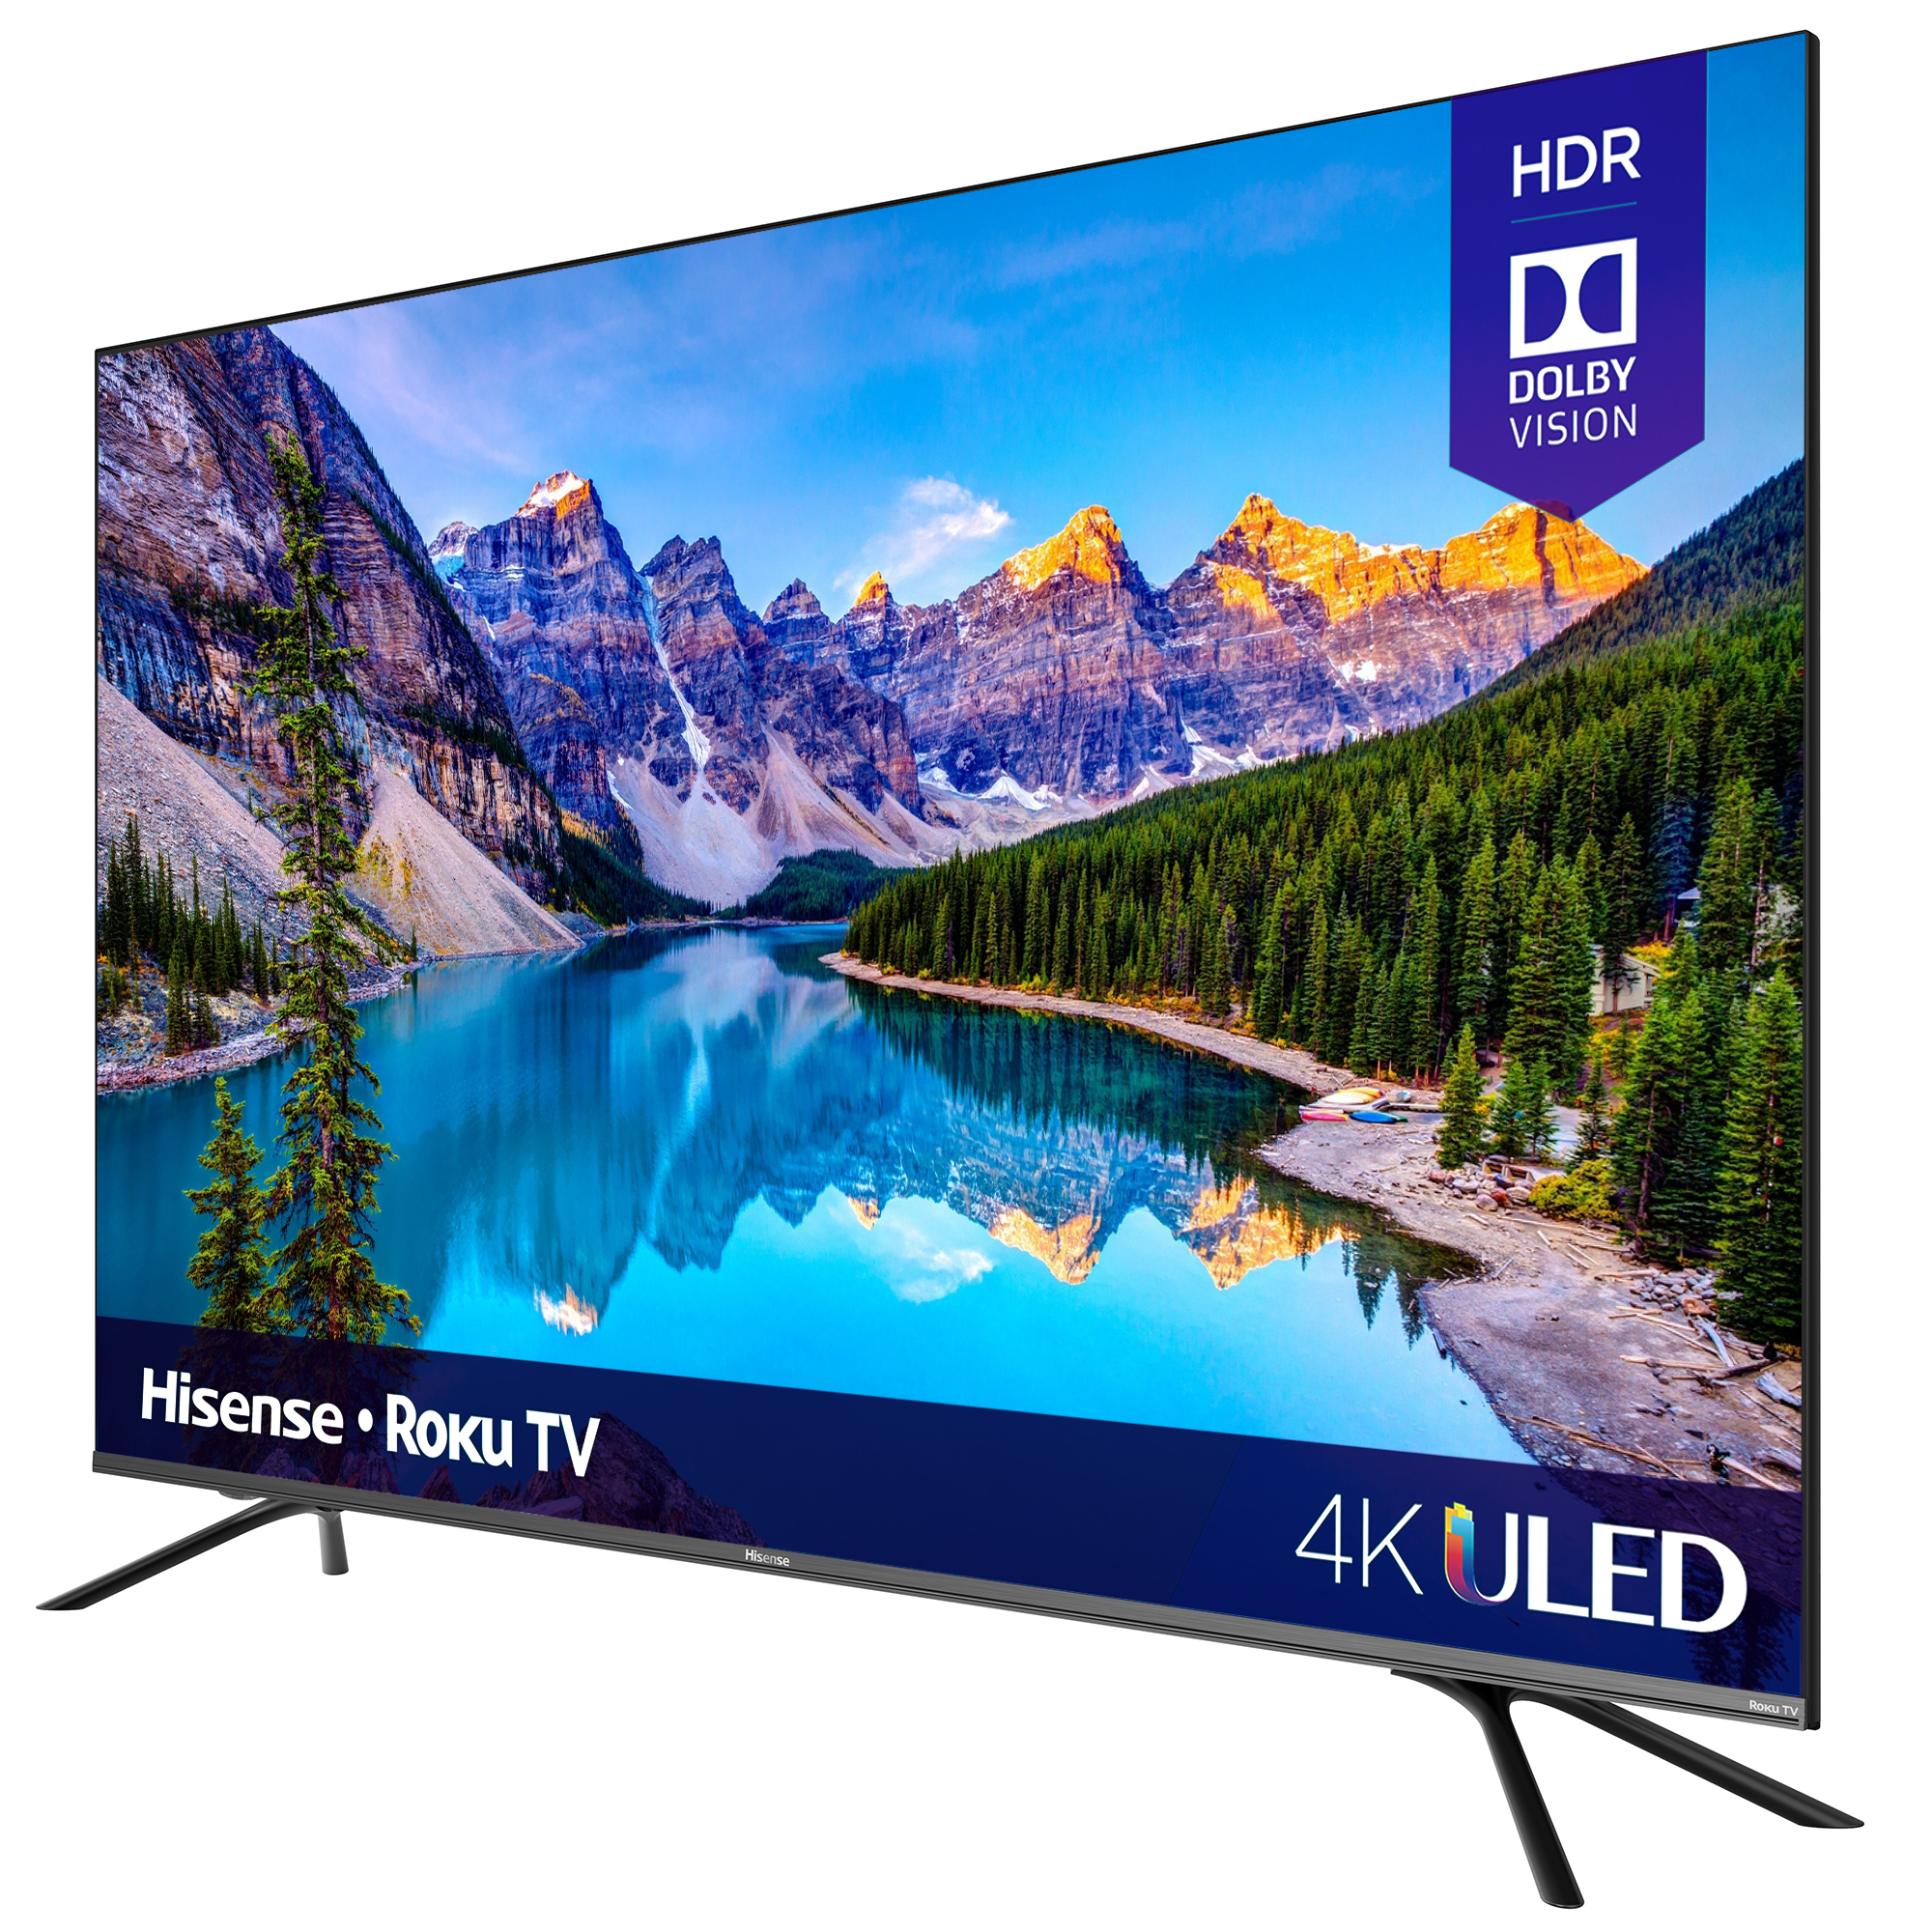 Hisense 55" Class 4K UHD LED Roku Smart TV HDR 55R8F - image 2 of 8